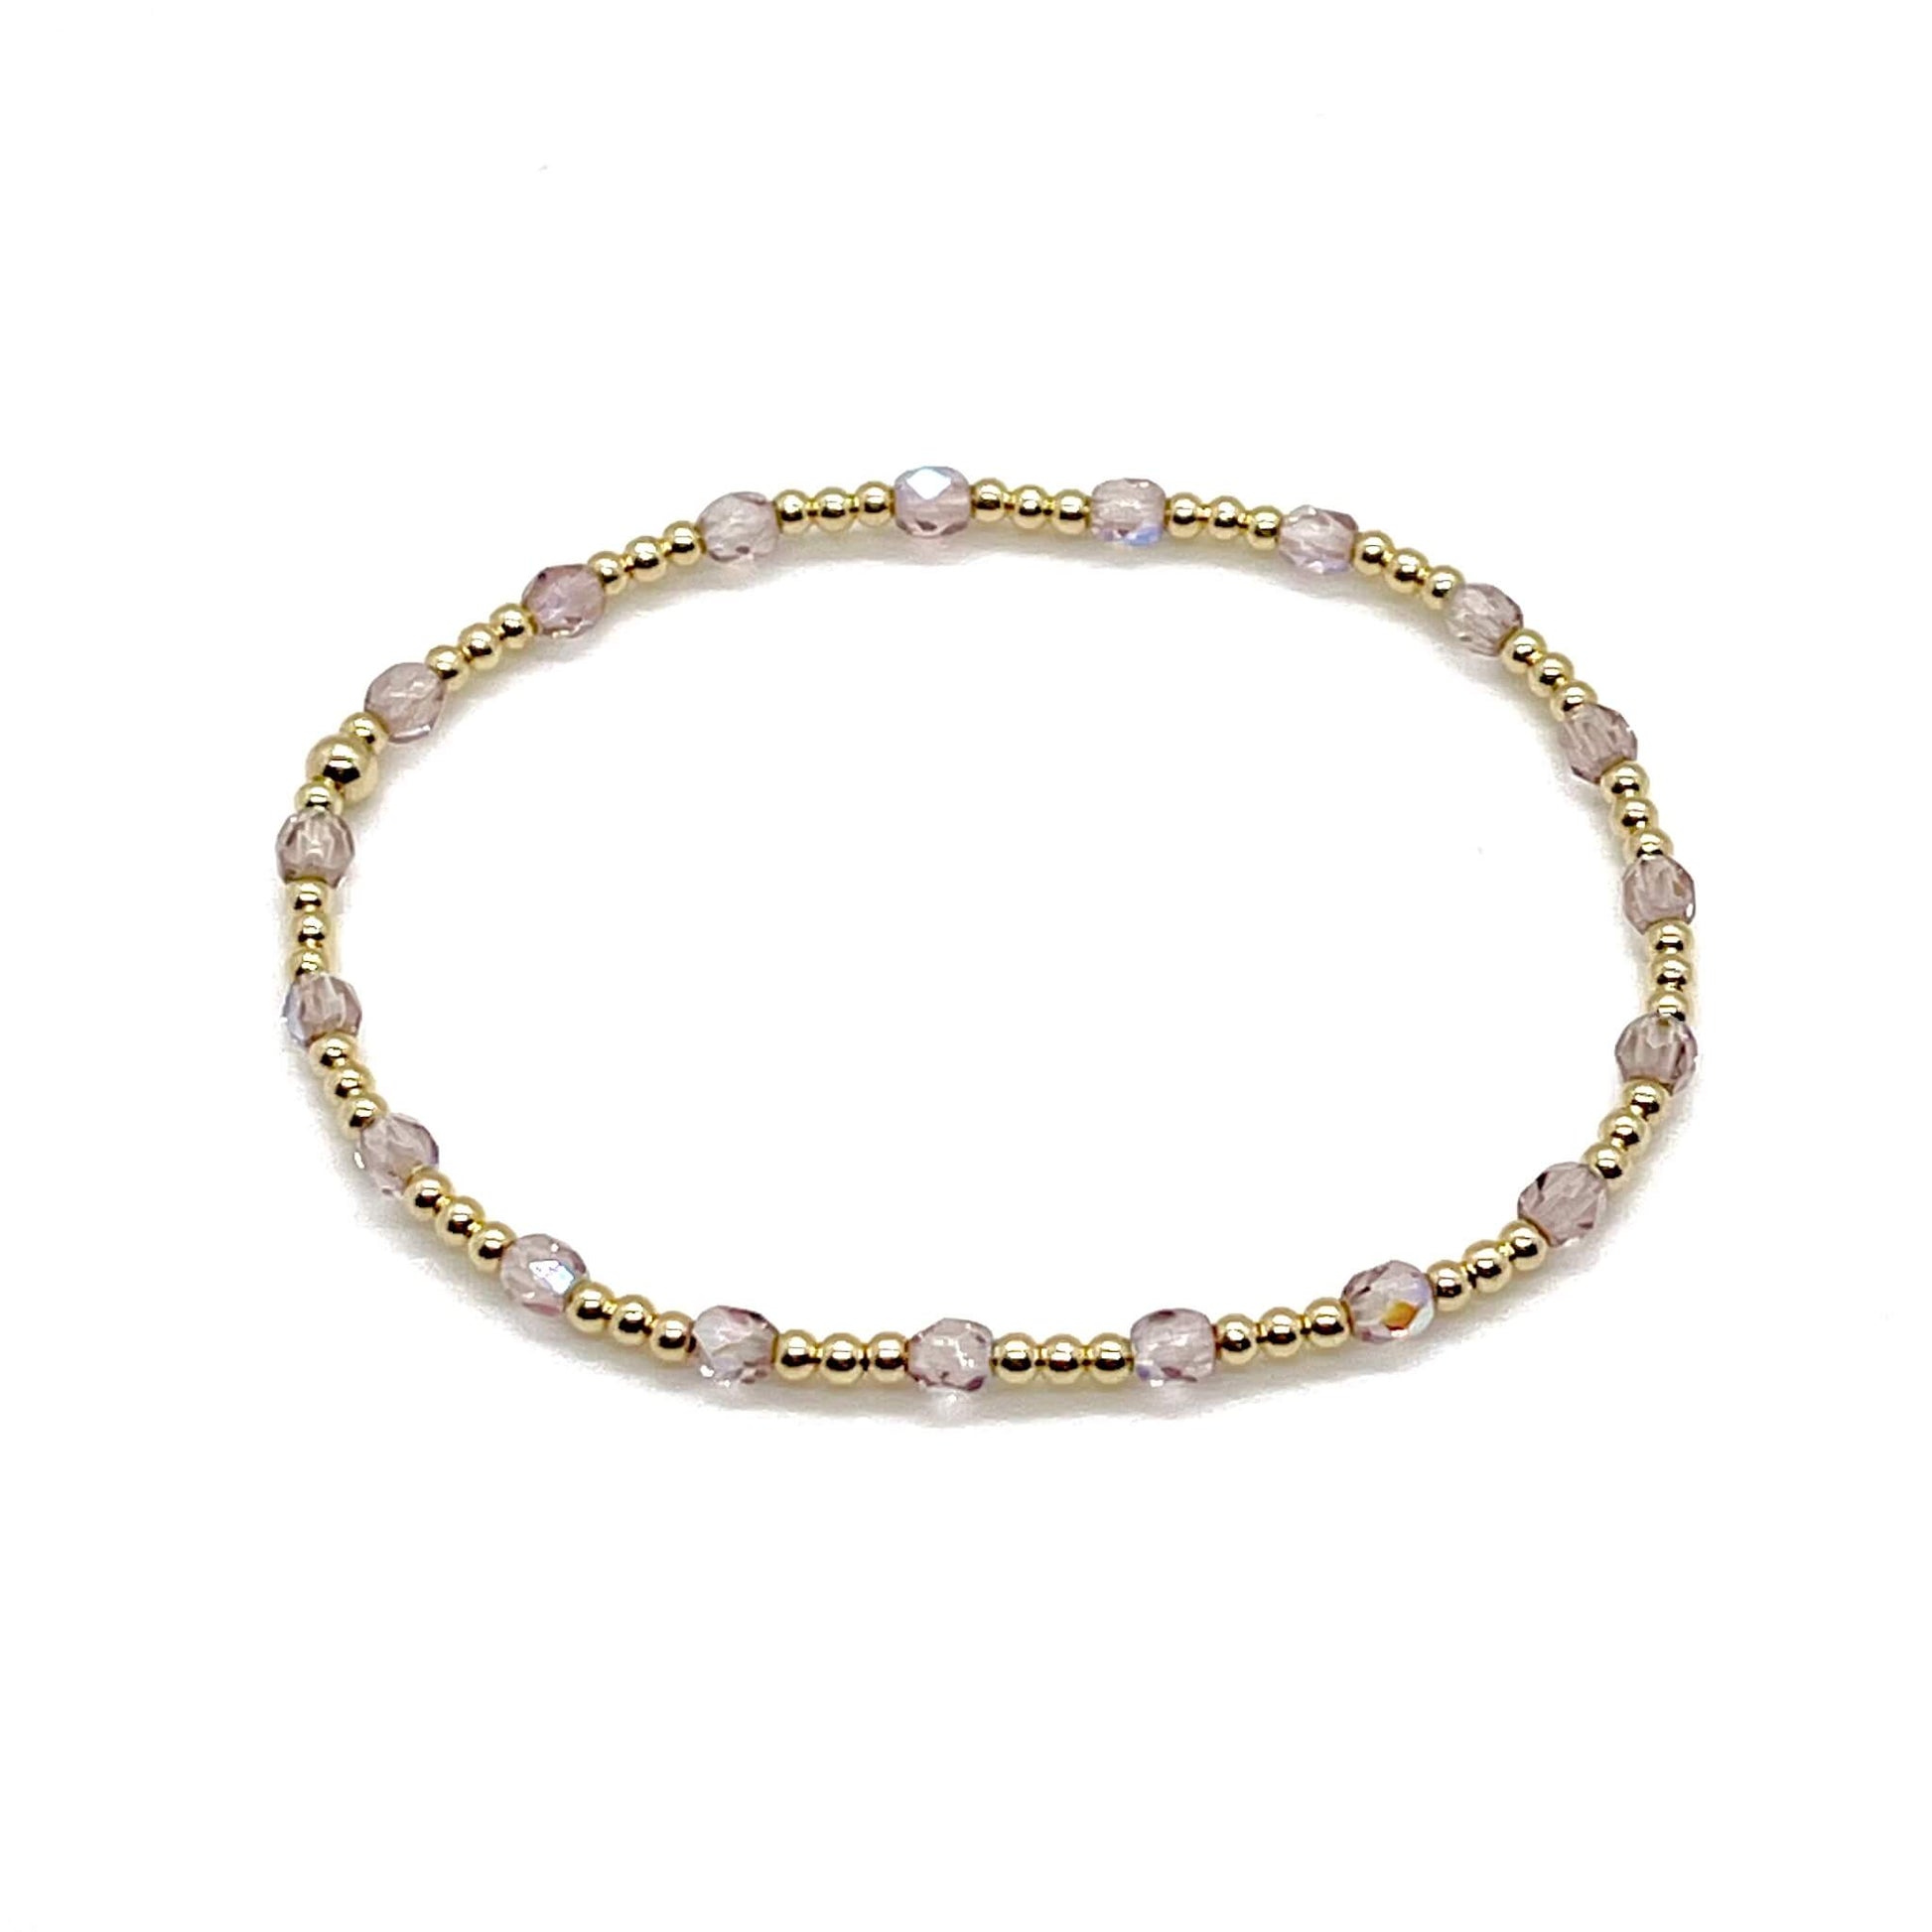 Light purple crystal bracelet with tiny gold beads. 14K gold filled stretch bracelet for women.